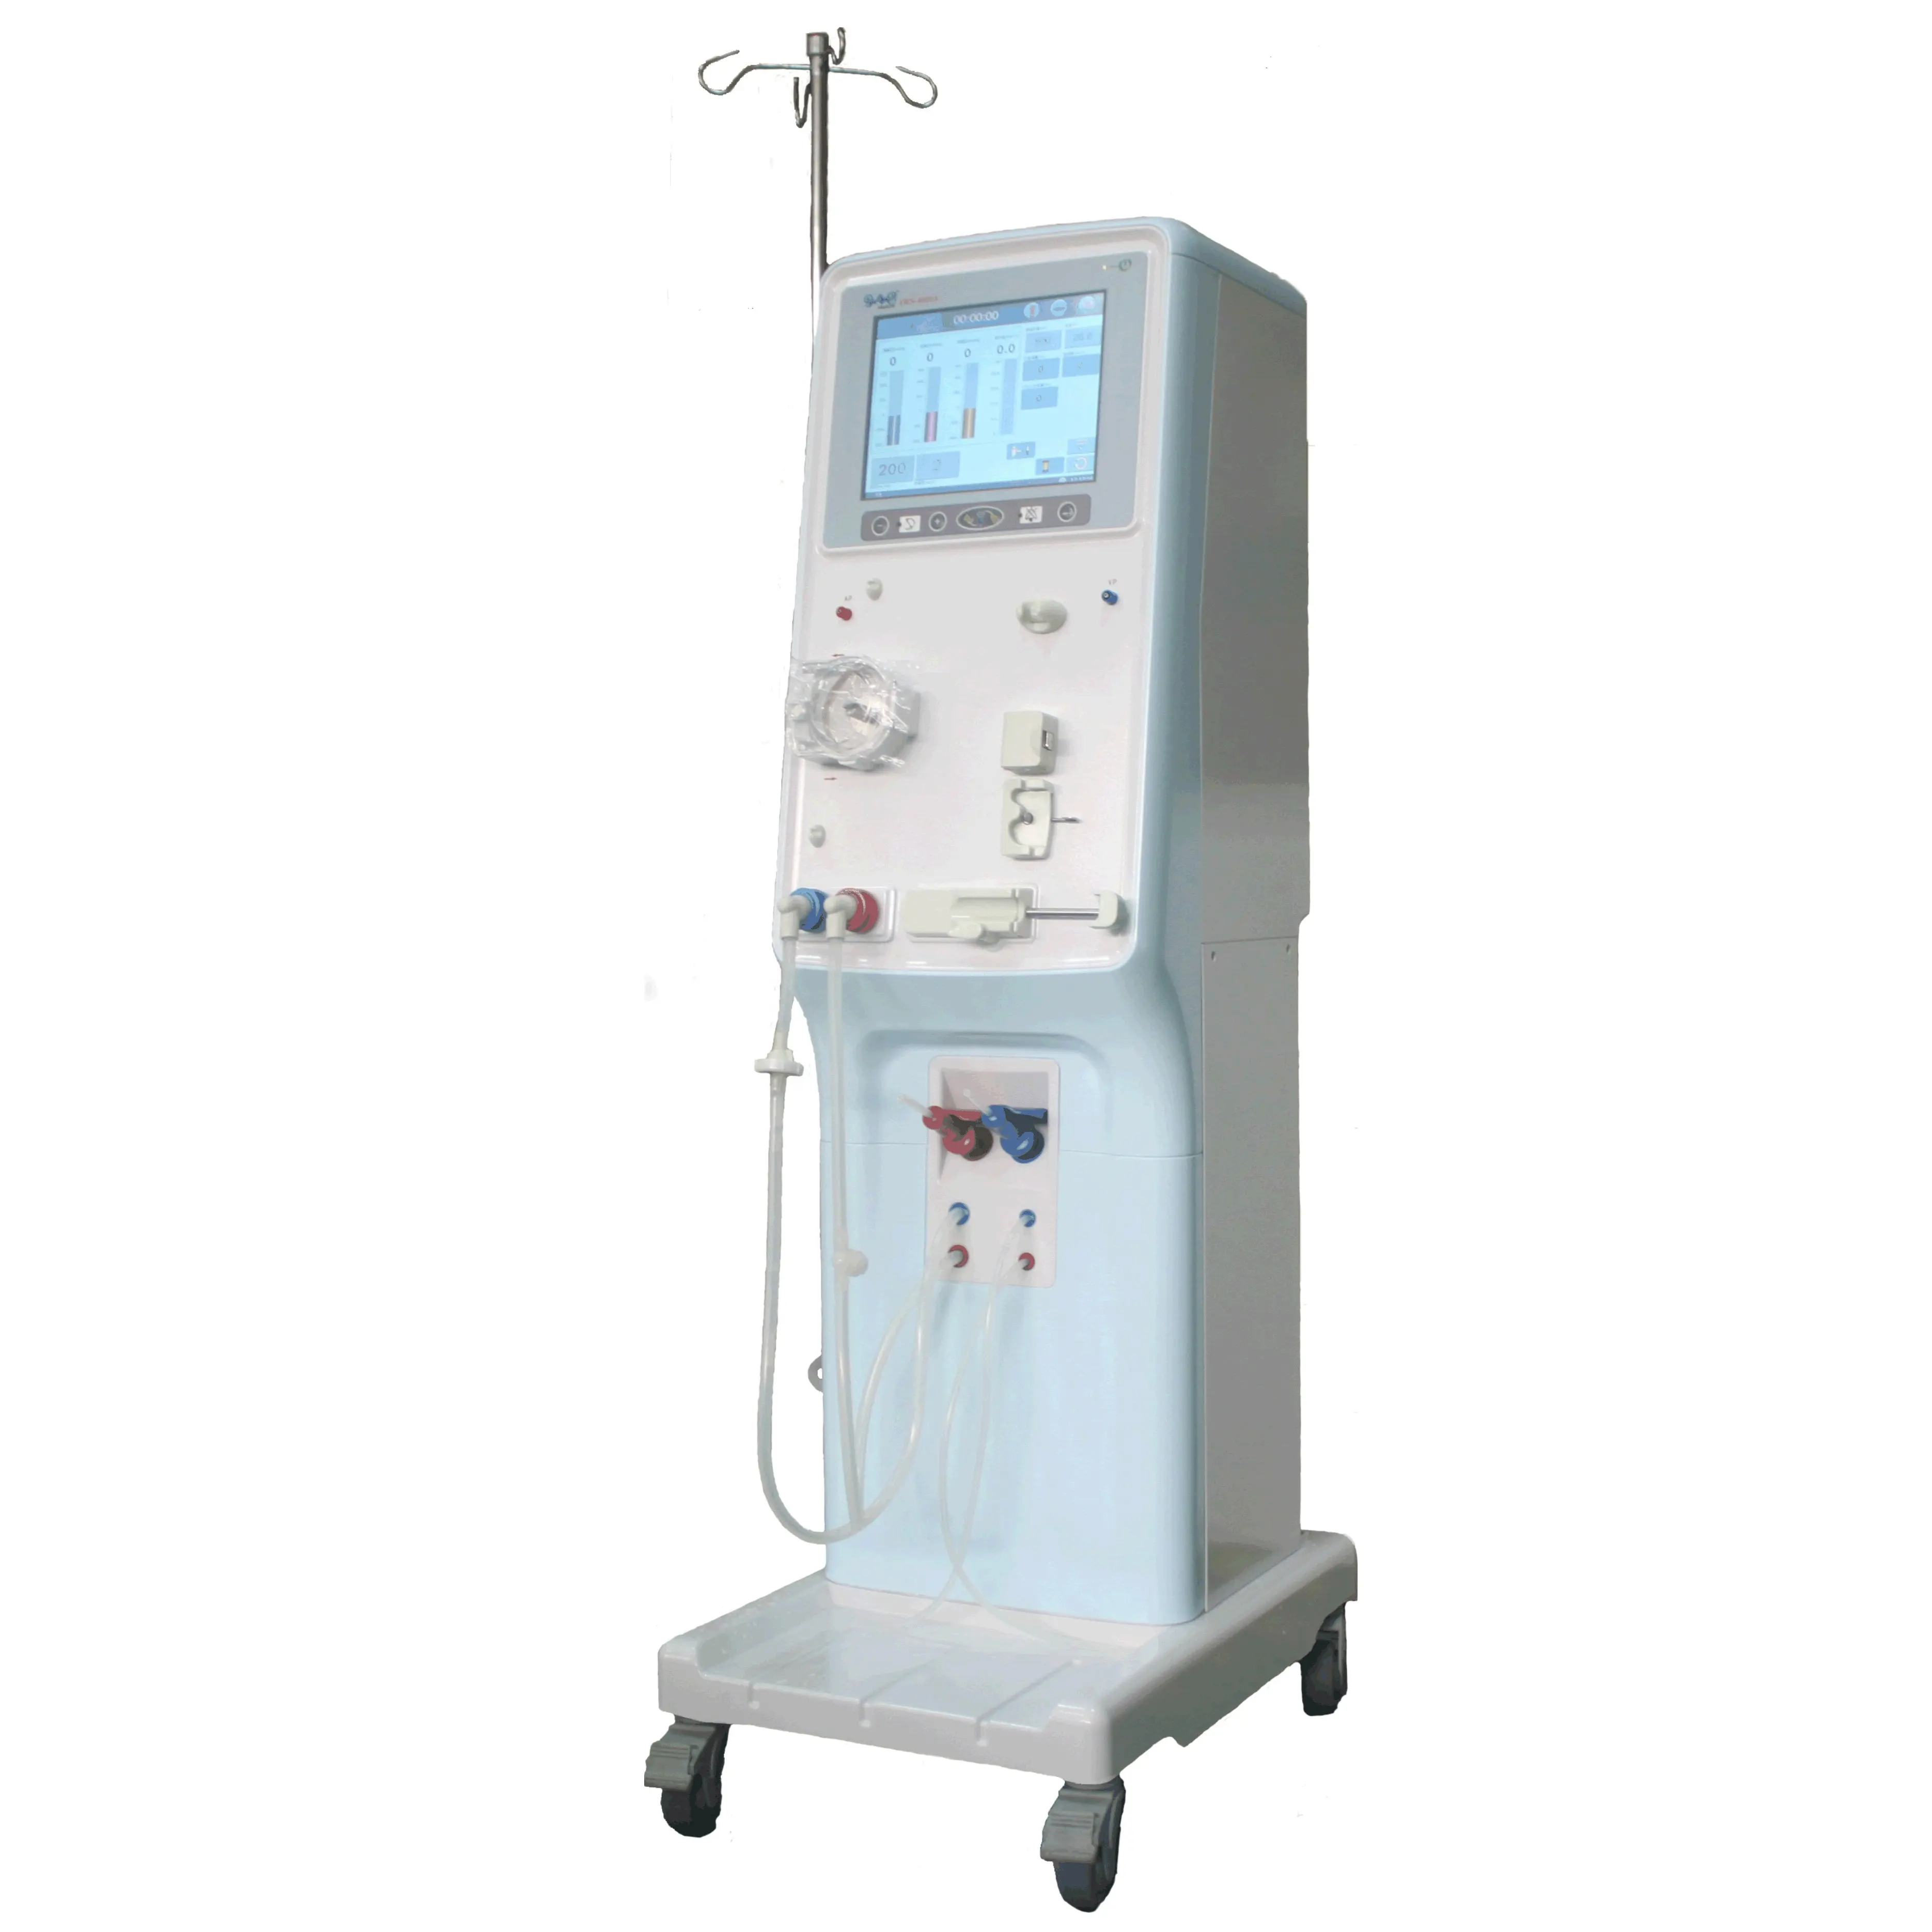 FSWS-4000 Series Peritoneal Dialysis Equipment fresenius dialysis machine